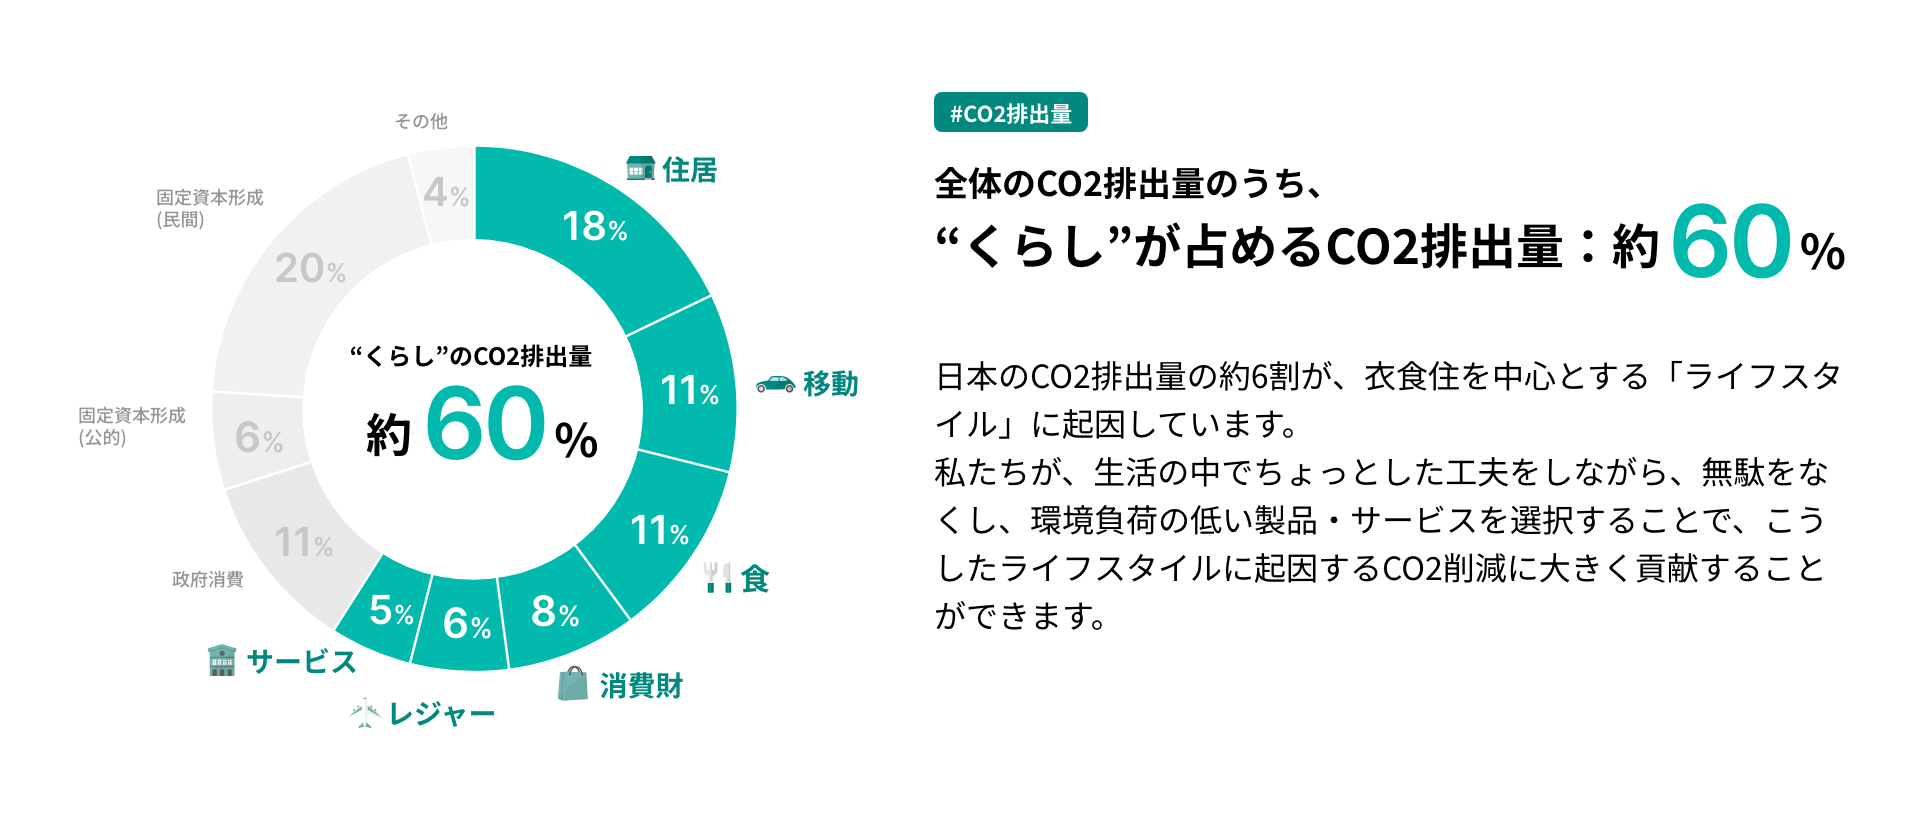 日本のCO2排出量の約6割が、衣食住を中心とする「ライフスタイル」に起因しています。私たちが、生活の中でちょっとした工夫をしながら、無駄をなくし、環境負荷の低い製品・サービスを選択することで、こうしたライフスタイルに起因するCO2削減に大きく貢献することができます。